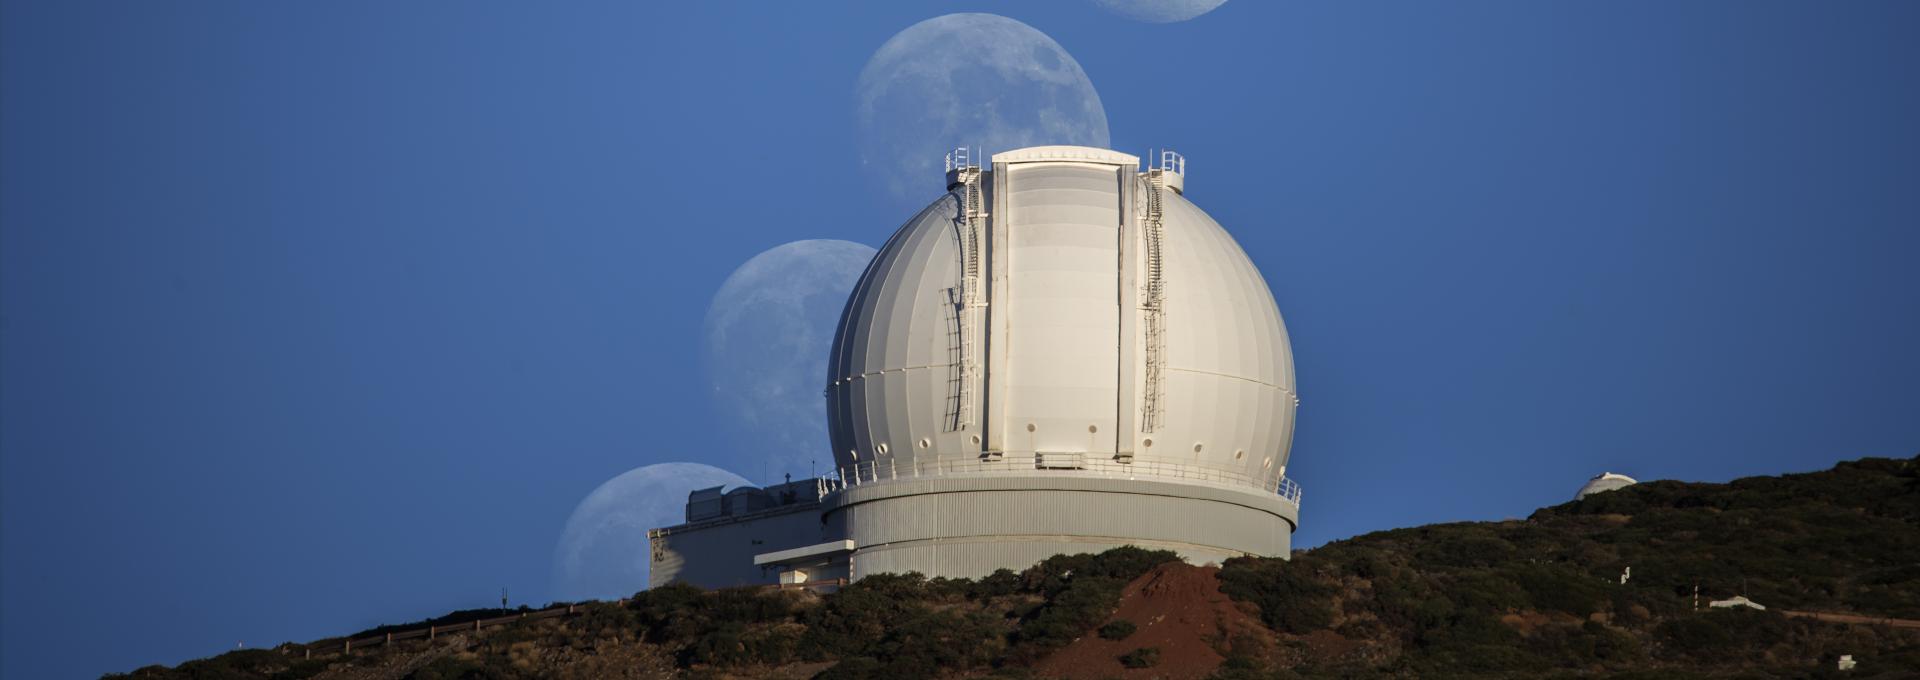 klok Aanpassen Plaats William Herschel Telescope | Instituto de Astrofísica de Canarias • IAC